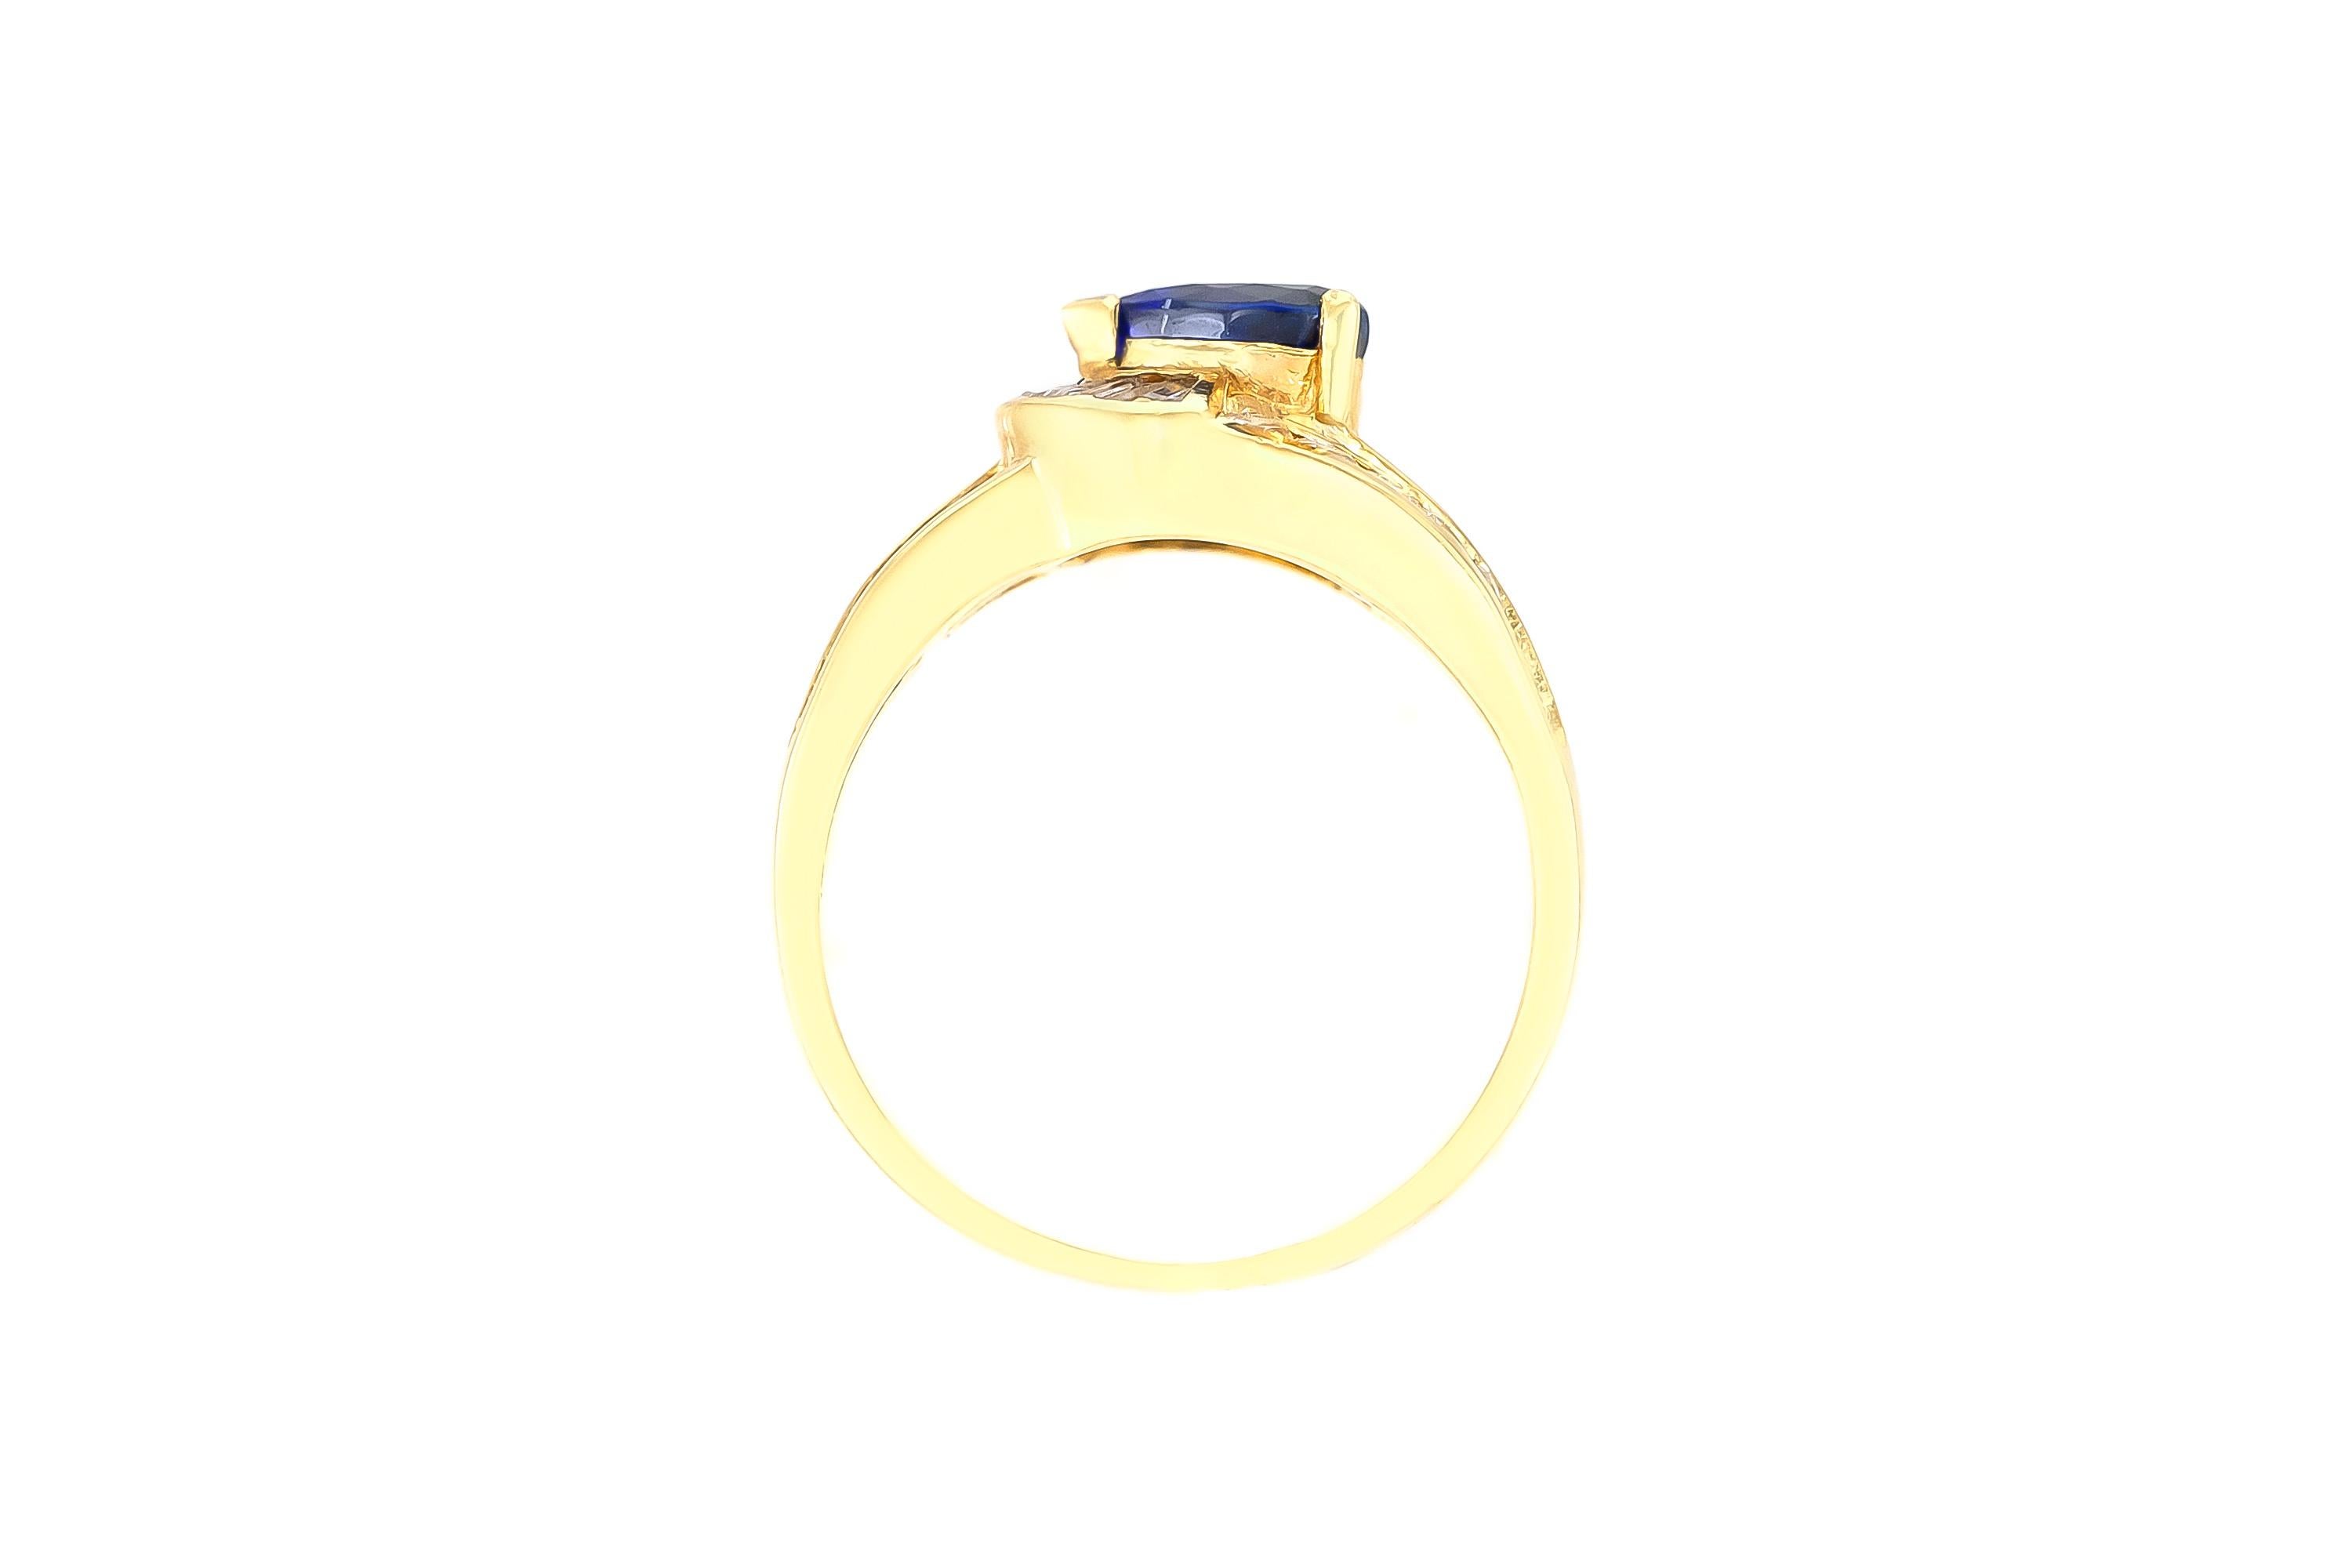 Der Ring ist fein in Handarbeit in 14k Gelbgold mit Diamanten mit einem Gesamtgewicht von etwa 0,65 Karat und Saphir mit einem Gesamtgewicht von etwa 1,42 Karat.
Um 1980.